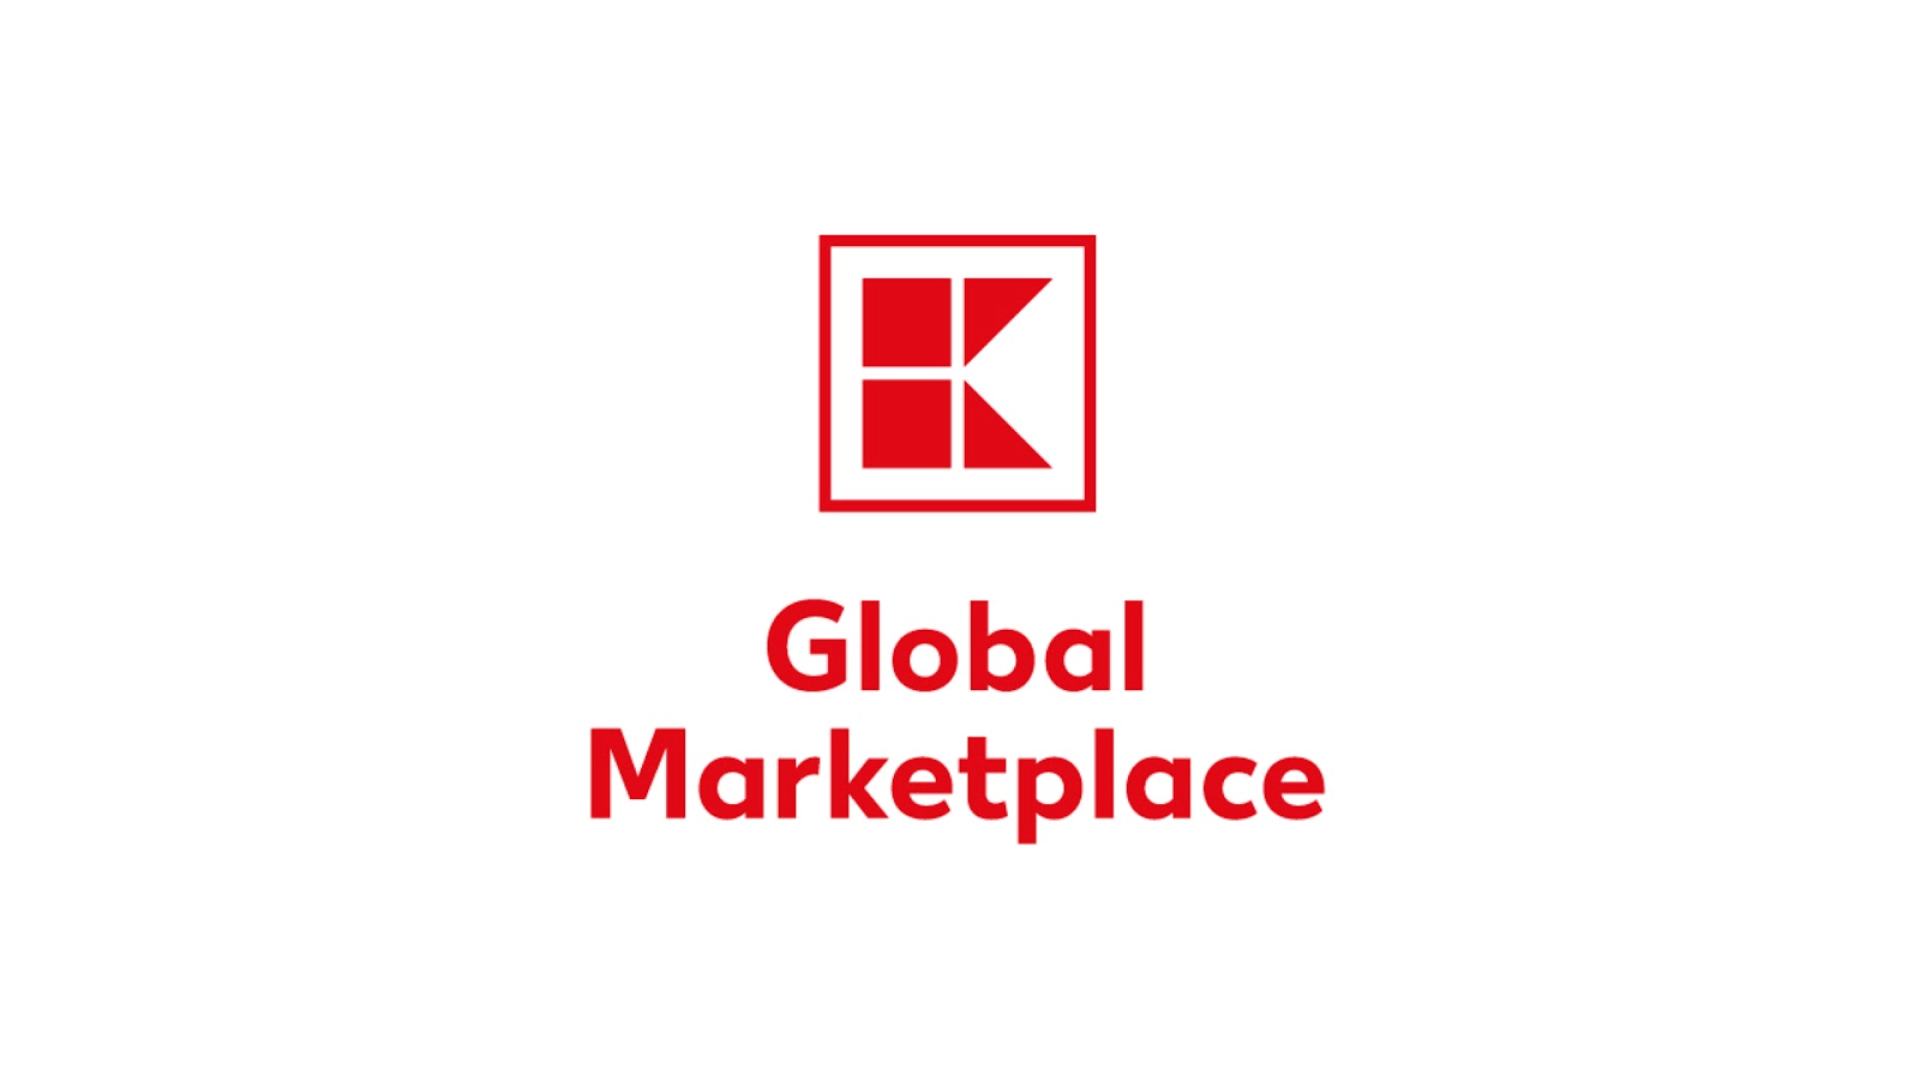 marketplaces_kaufland-global-marketplace_1920x1080